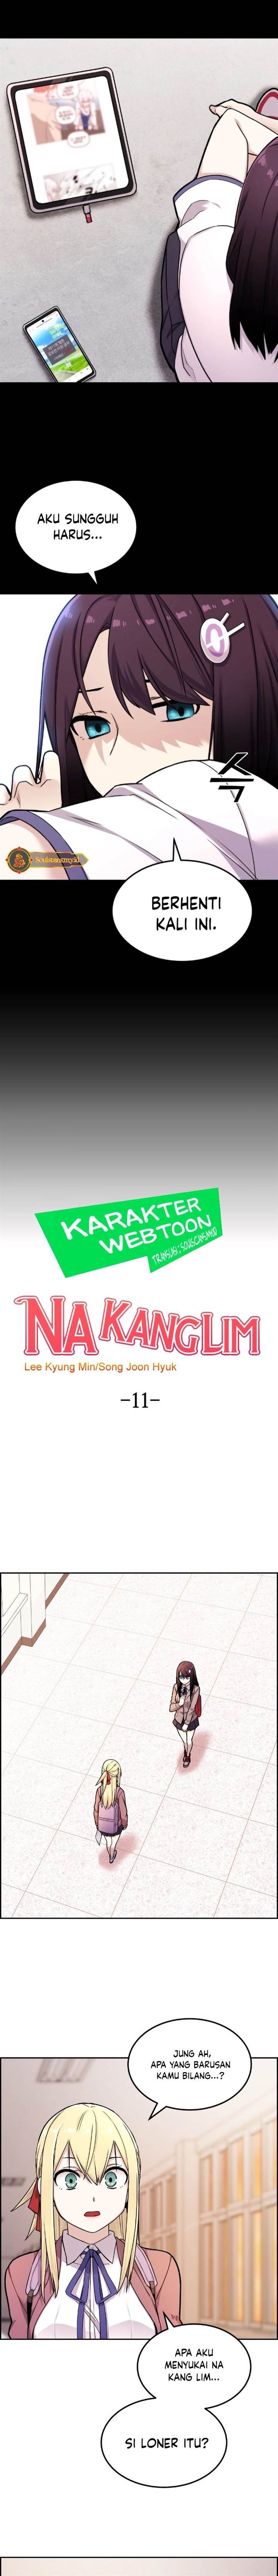 Webtoon Character Na Kang Lim Chapter 11